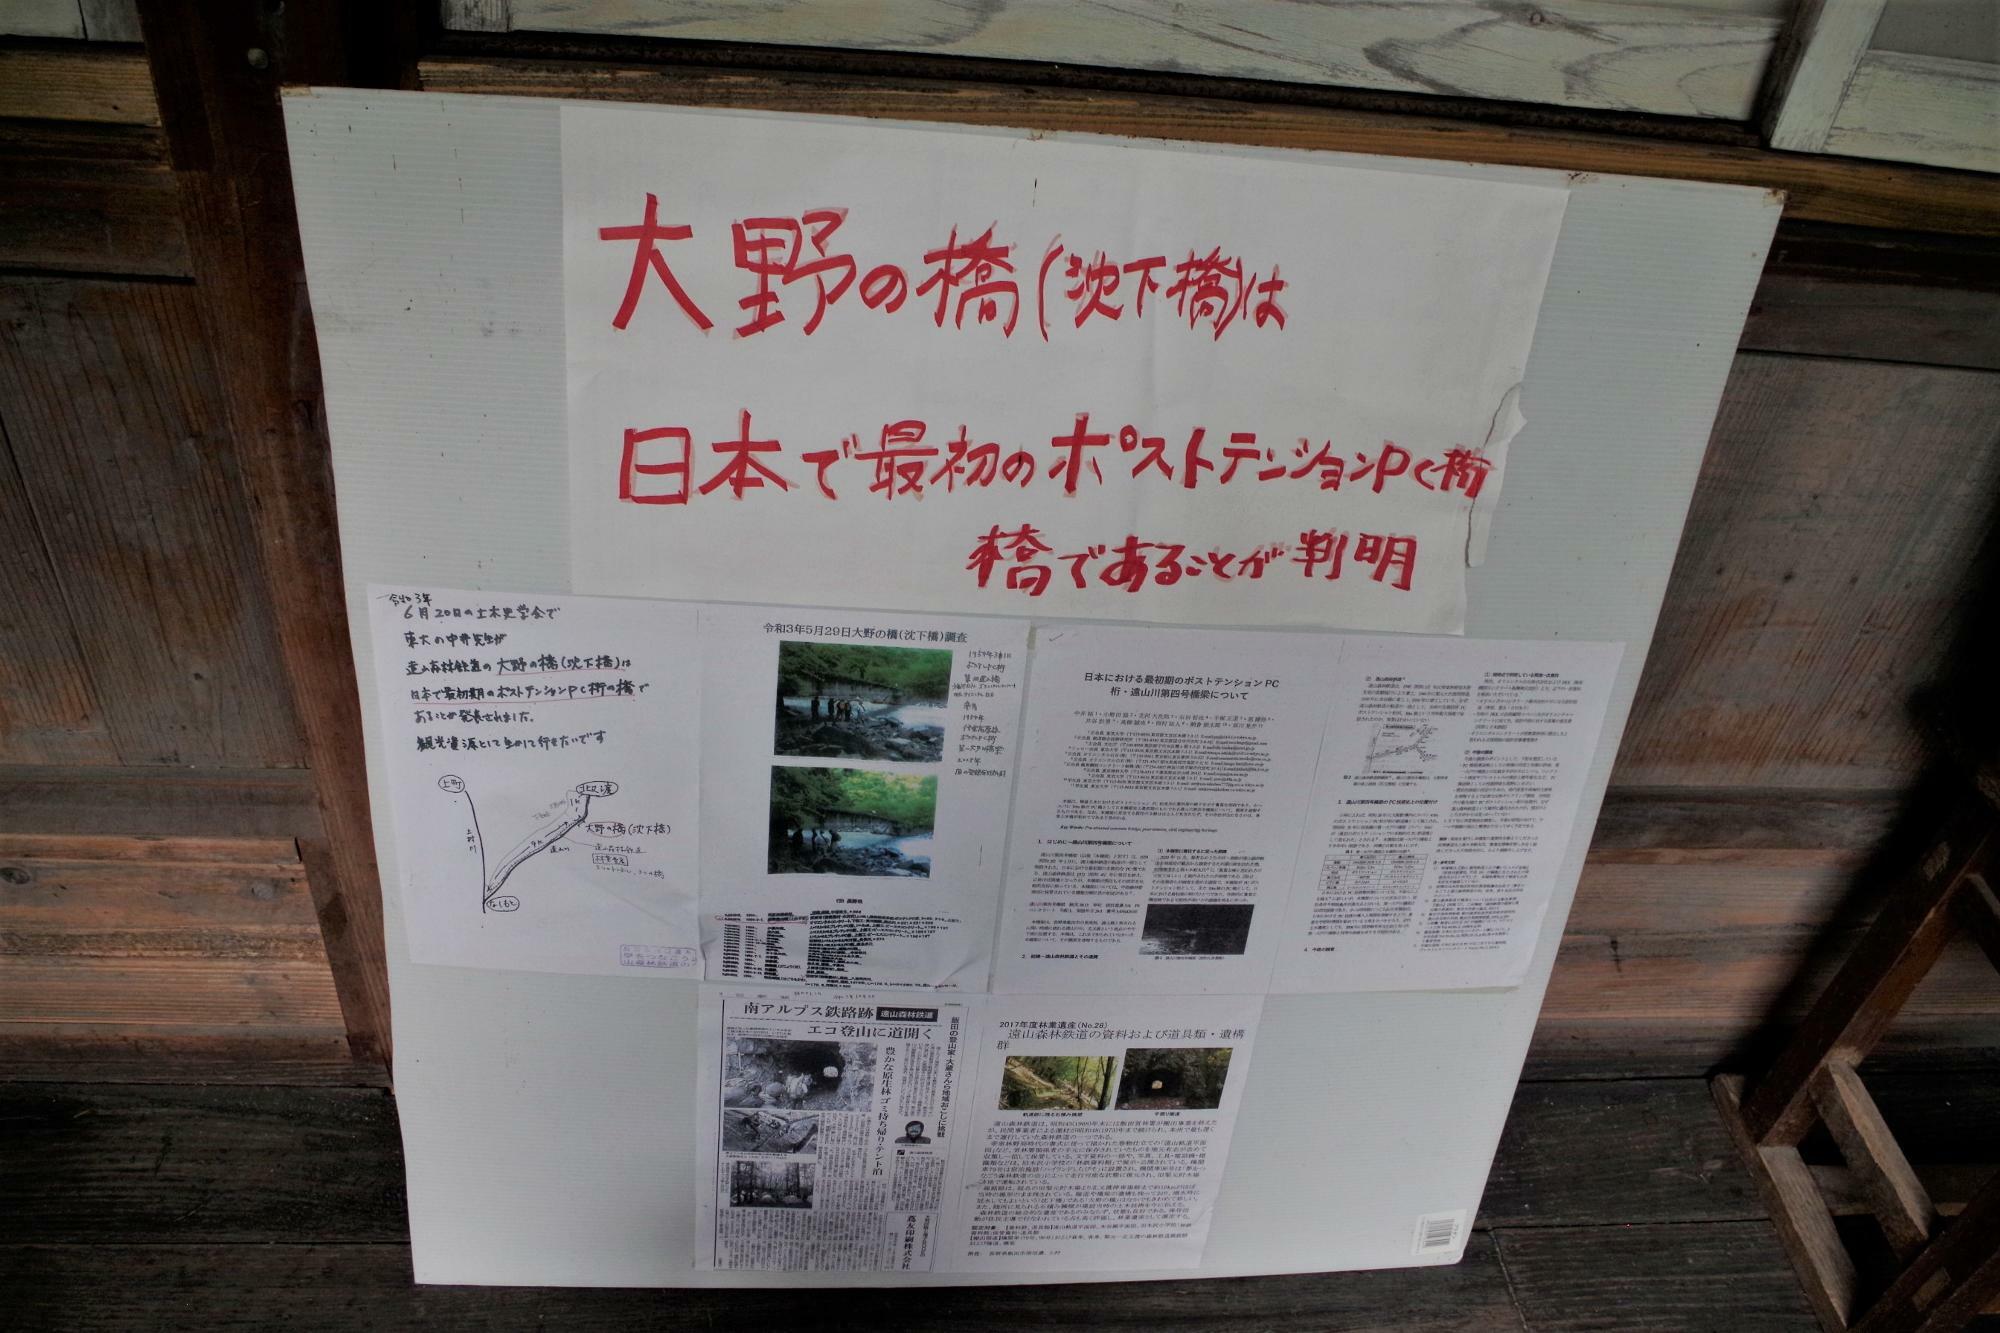 温かみのある手書きで展示された最新情報。遠山森林鉄道跡にある大野の橋（沈下橋）は、日本における最初期のポストテンションPC桁橋であることが判明。と記されています。すごいですね！